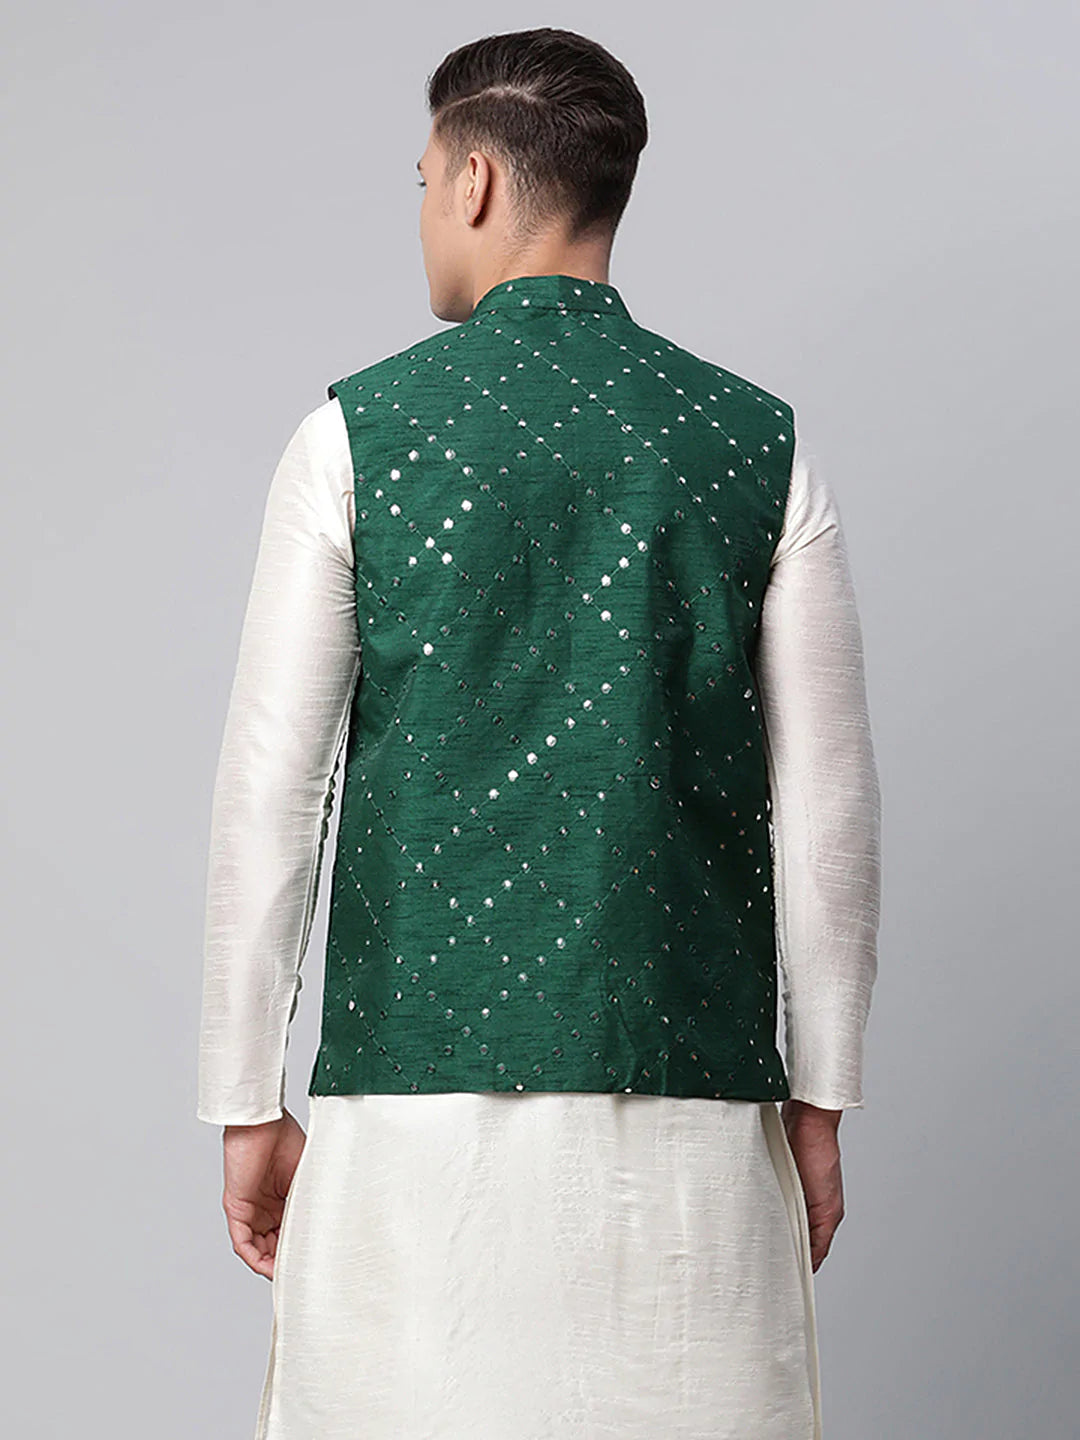 Men's Green Mirror Work Embroidered Nehru Jacket( JOWC 4040 Green )